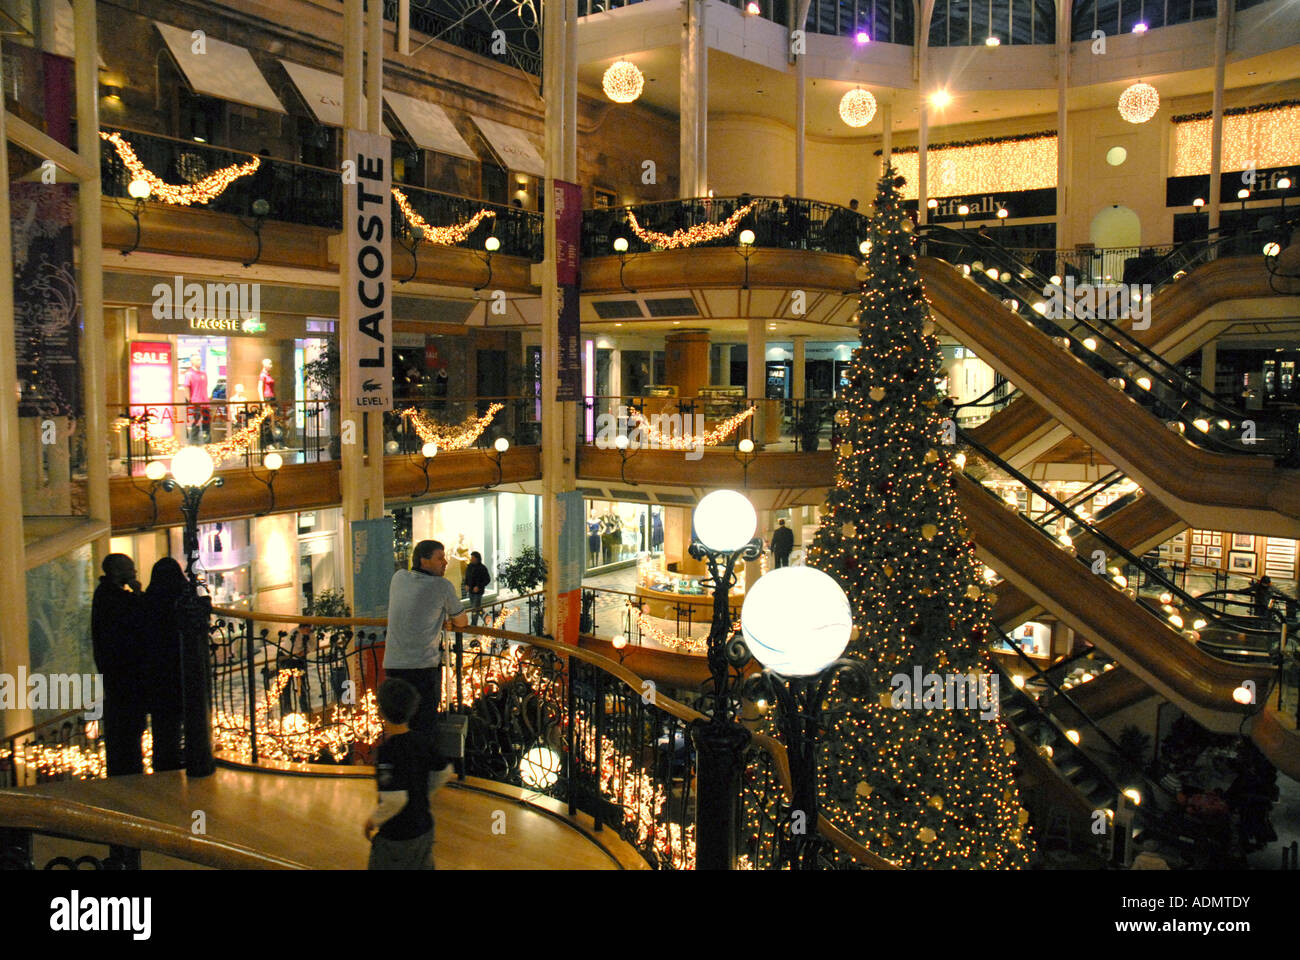 Princes Square Shopping Centre, Glasgow. Scotland. Christmas Eve December 2006 Stock Photo